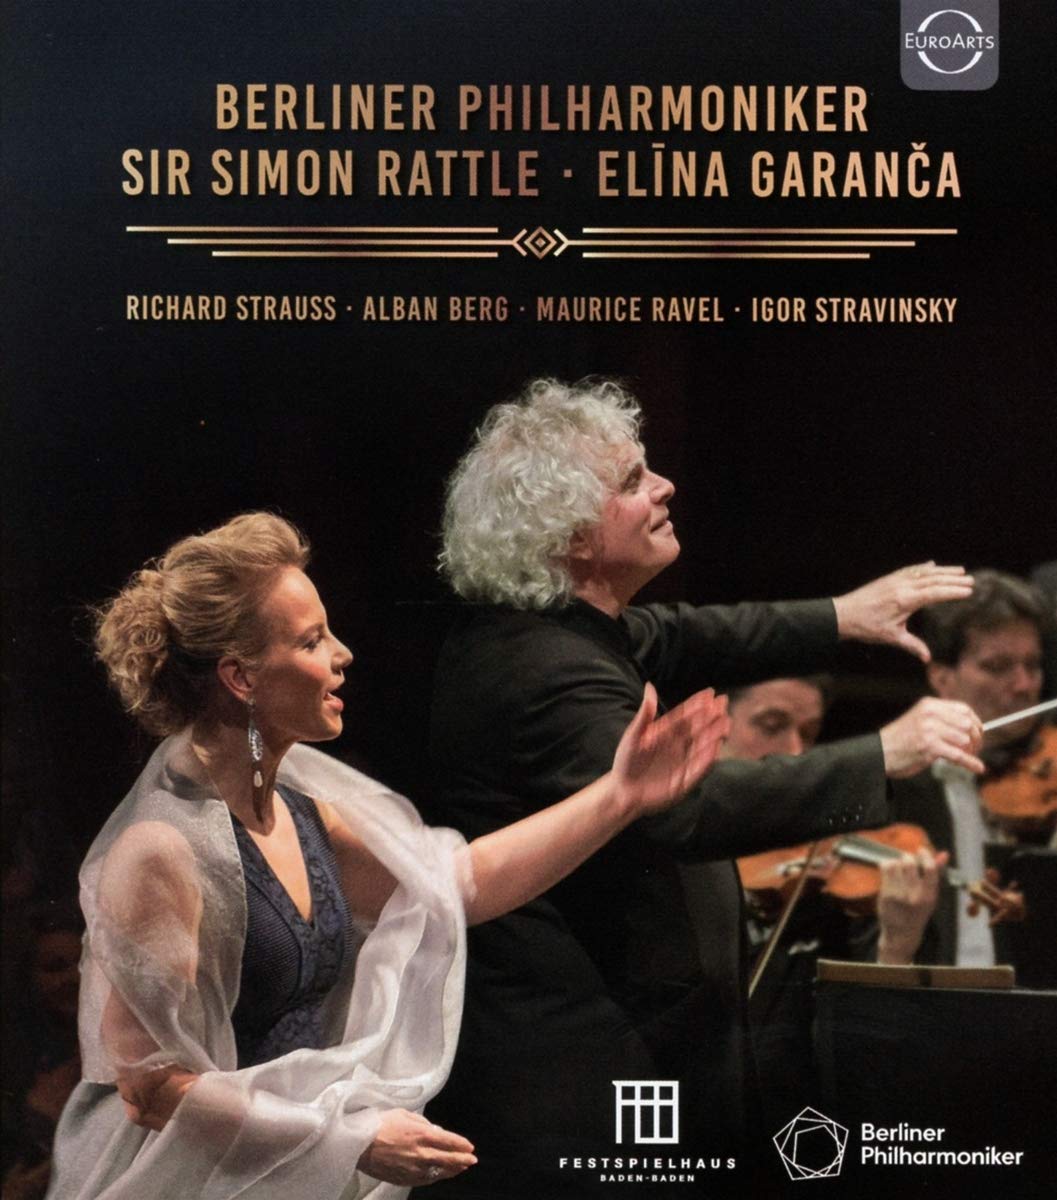 EN - Berliner Philharmoniker Sir Simon Rattle Elina Garanca in Baden Baden